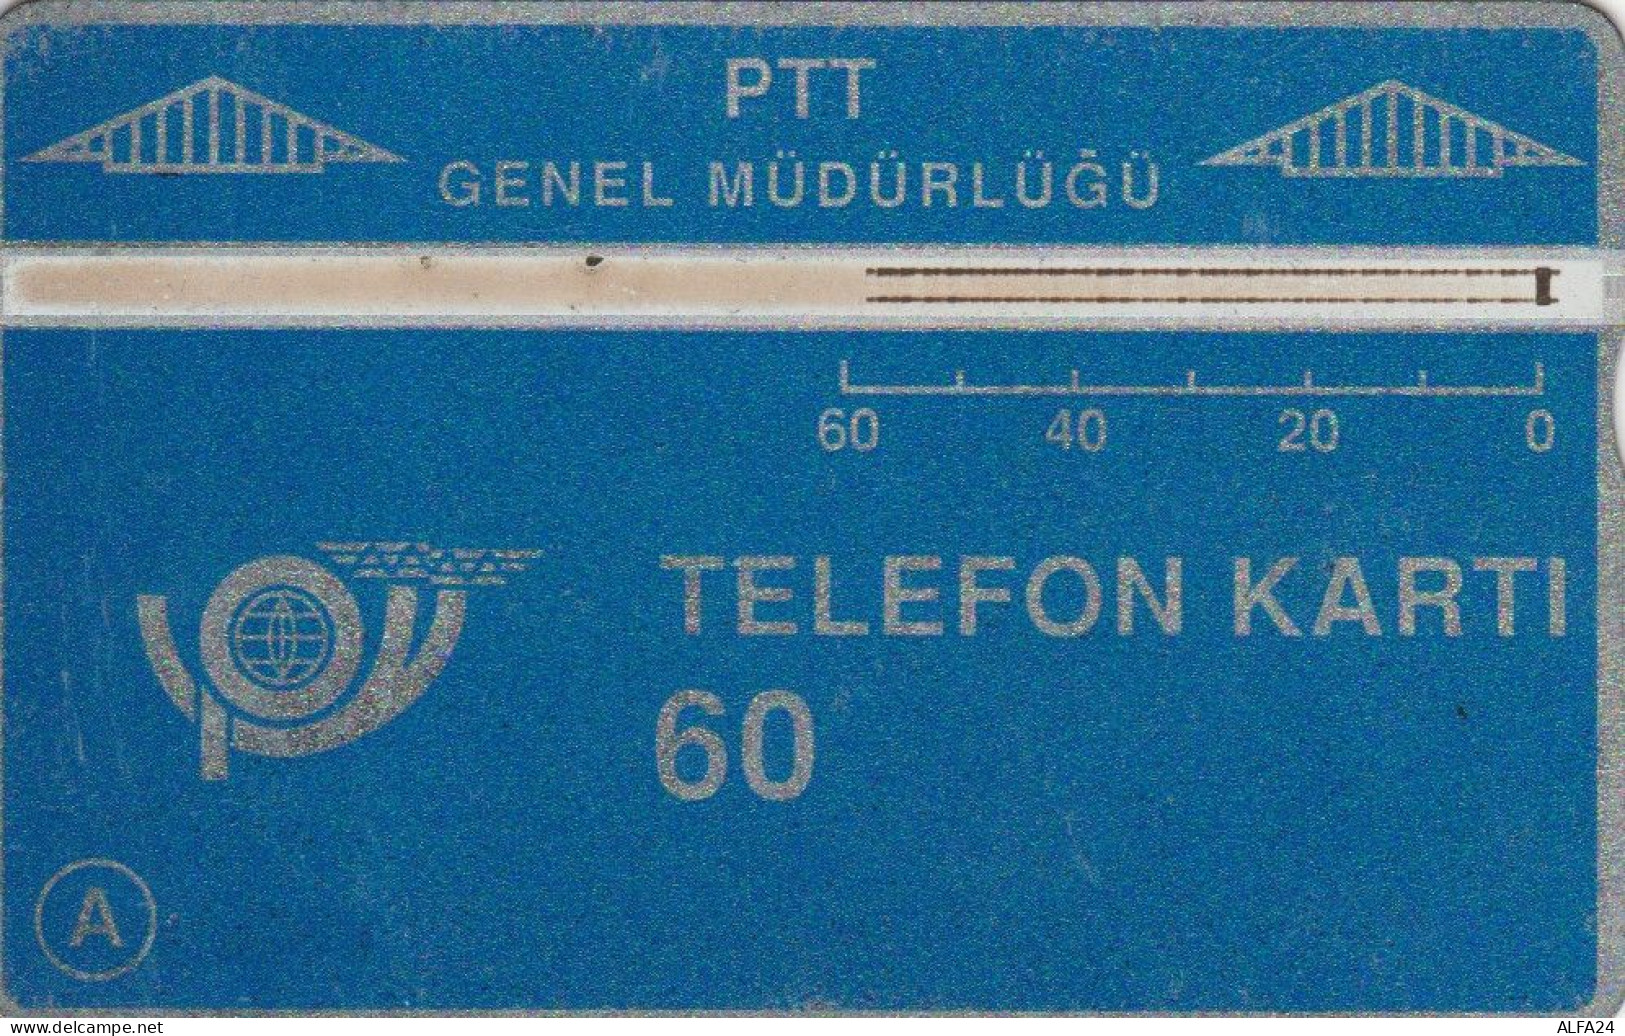 PHONE CARD TURCHIA -PRIME EMISSIONI (E64.16.7 - Turquie